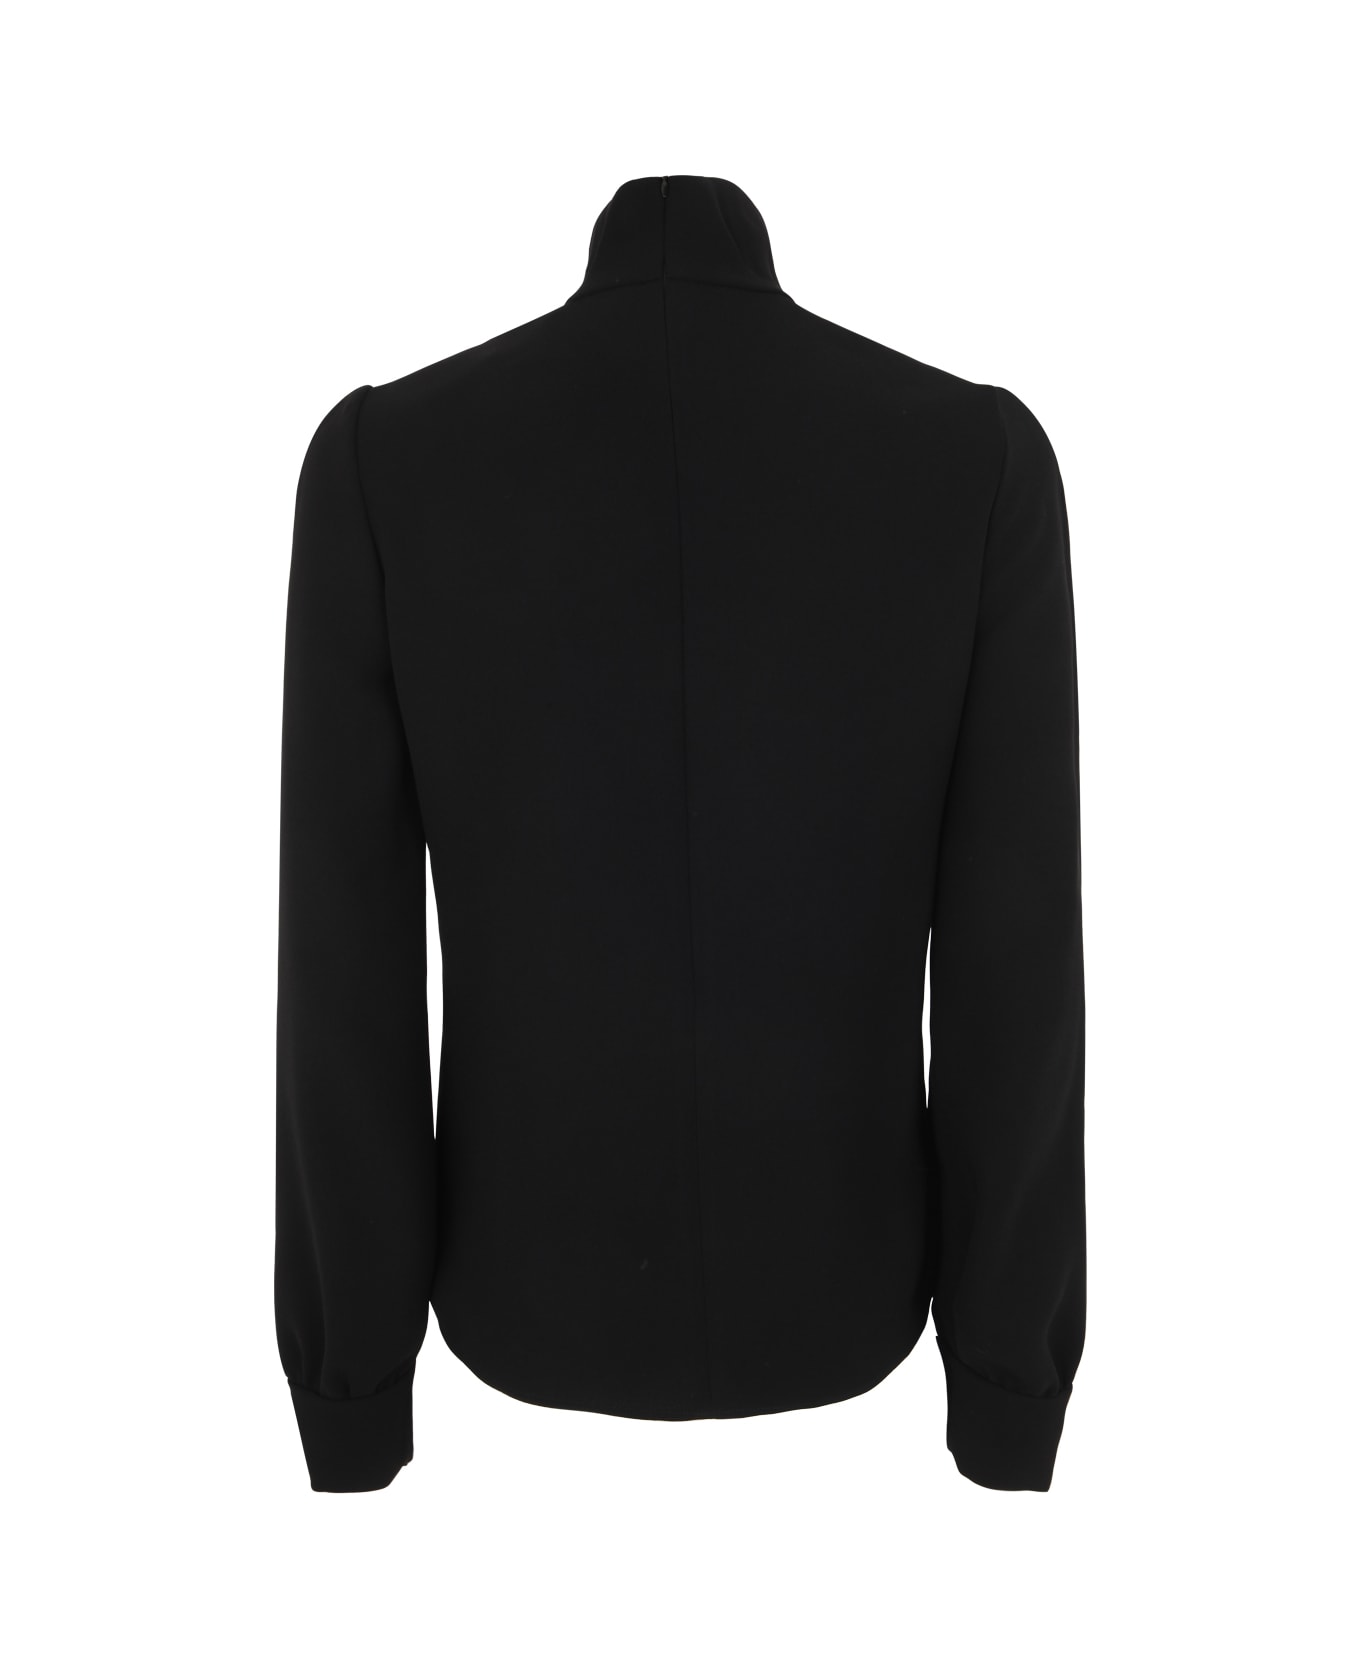 N.21 High Neck Sweater - Black ニットウェア